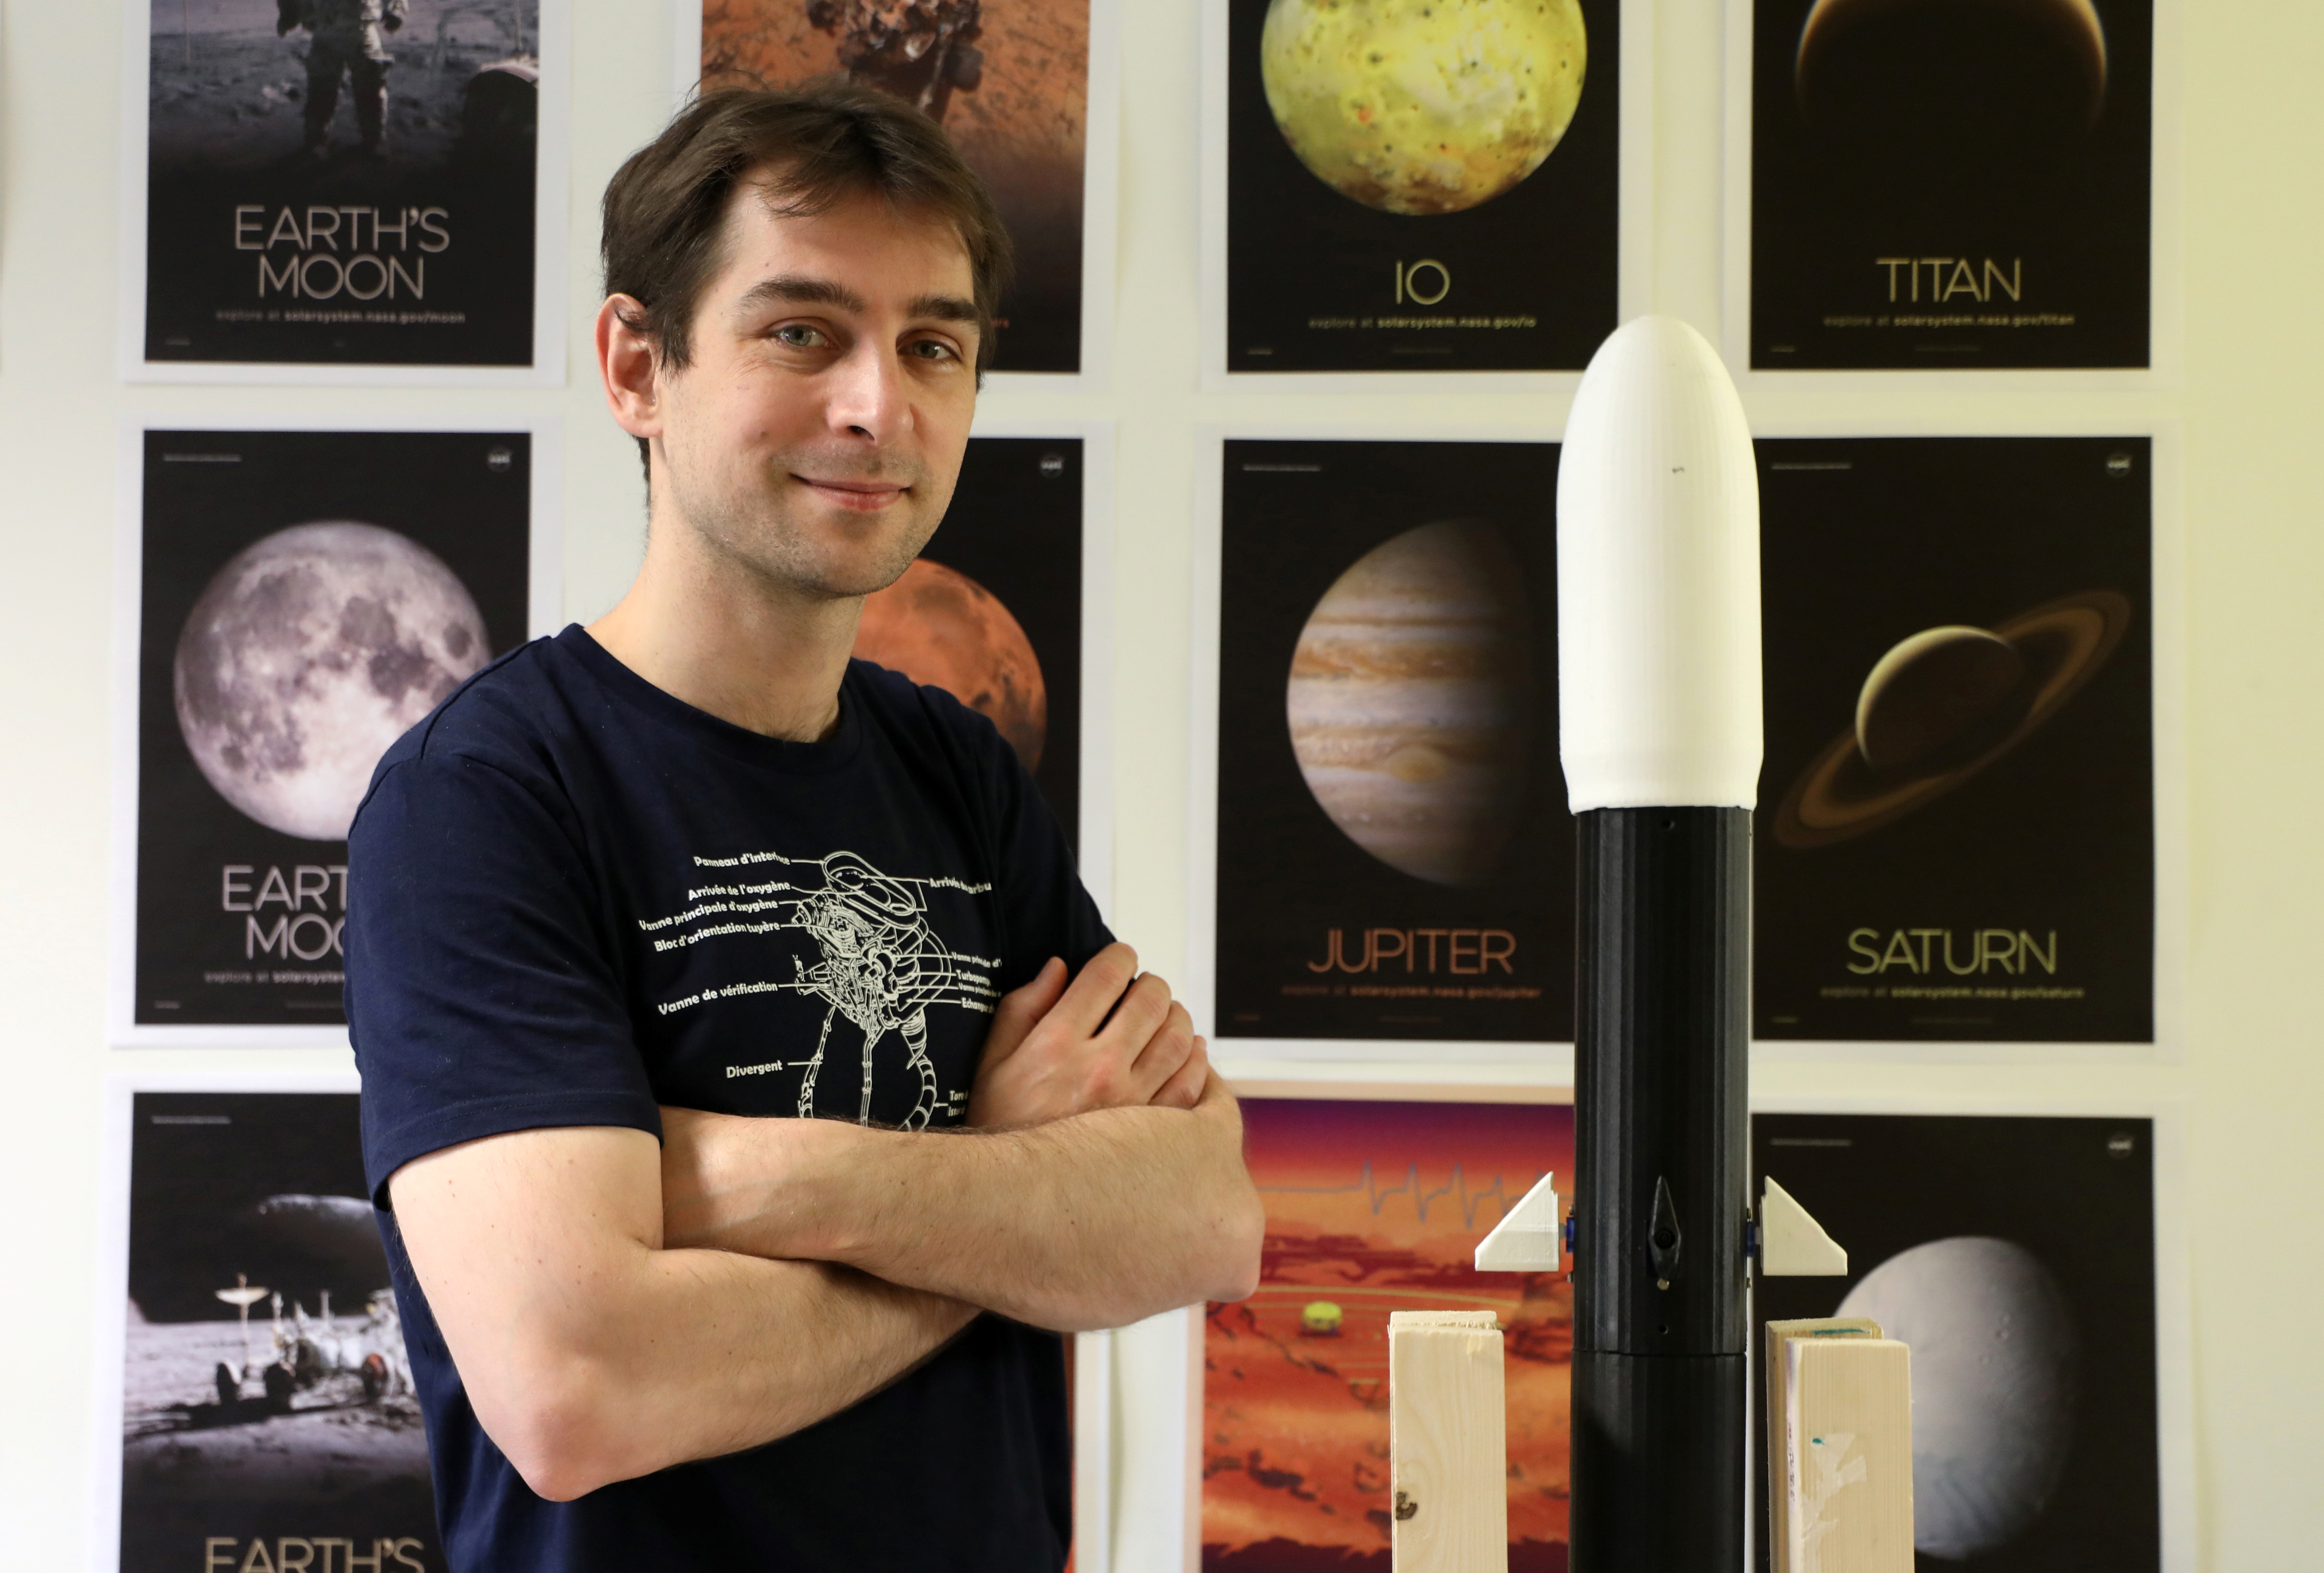 Метју Плувинаџ, кандидат за избор на астронаут на Европската вселенска агенција (ЕСА), позира во својата канцеларија во инженерското училиште ЕСИГЕЛЕЦ каде што предава, во Сент Етјен-ду-Рувреј, Франција, 4 јуни 2021 година. Сликата е направена на 4 јуни, 2021. REUTERS / Леа Гуеј